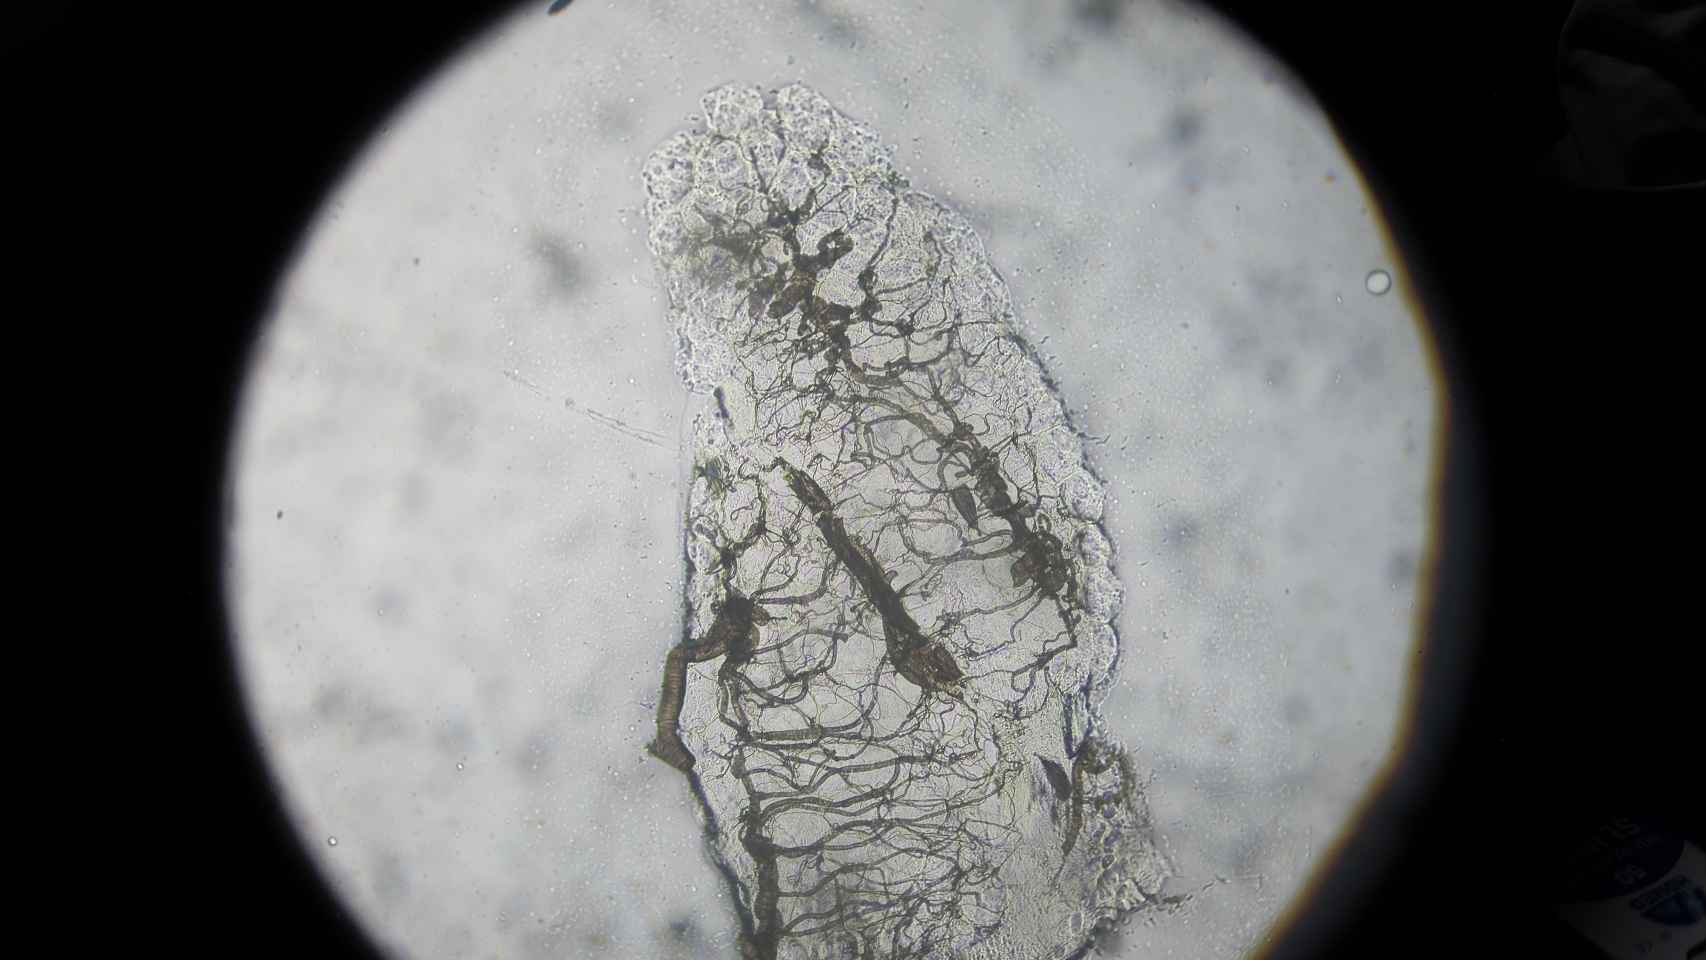 Vista a través del microscopio del ovario de un mosquito Anopheles que ya ha puesto huevos.